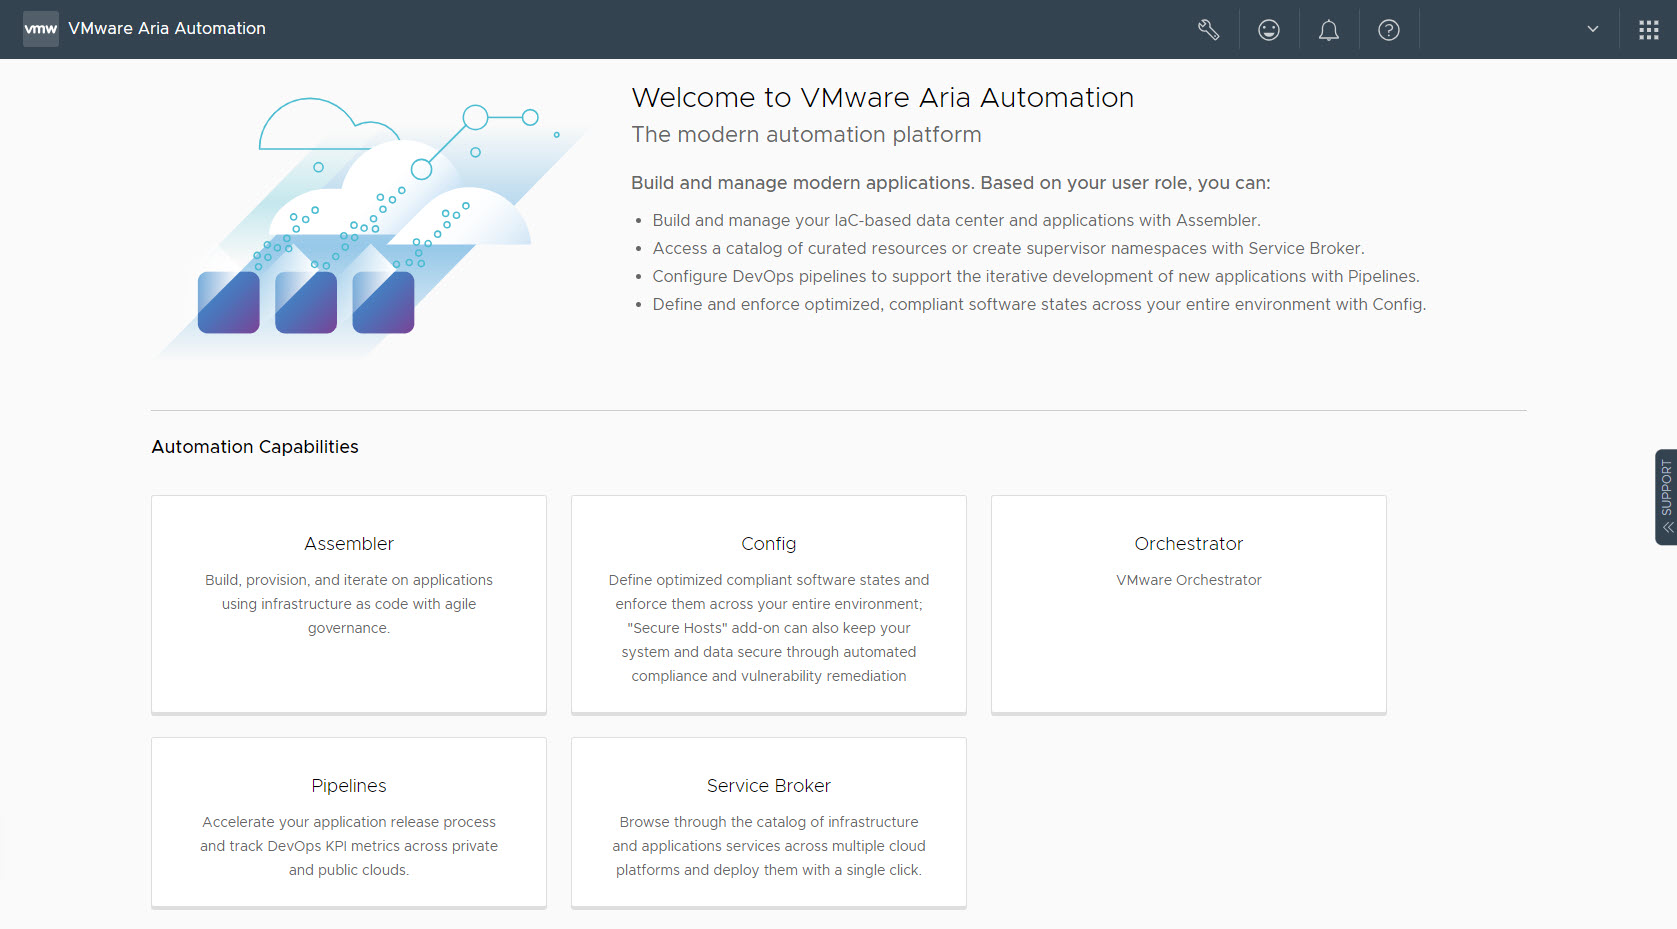 Sur la page de lancement de VMware Aria Automation, démarrez les services pour lesquels vous disposez d'une autorisation.